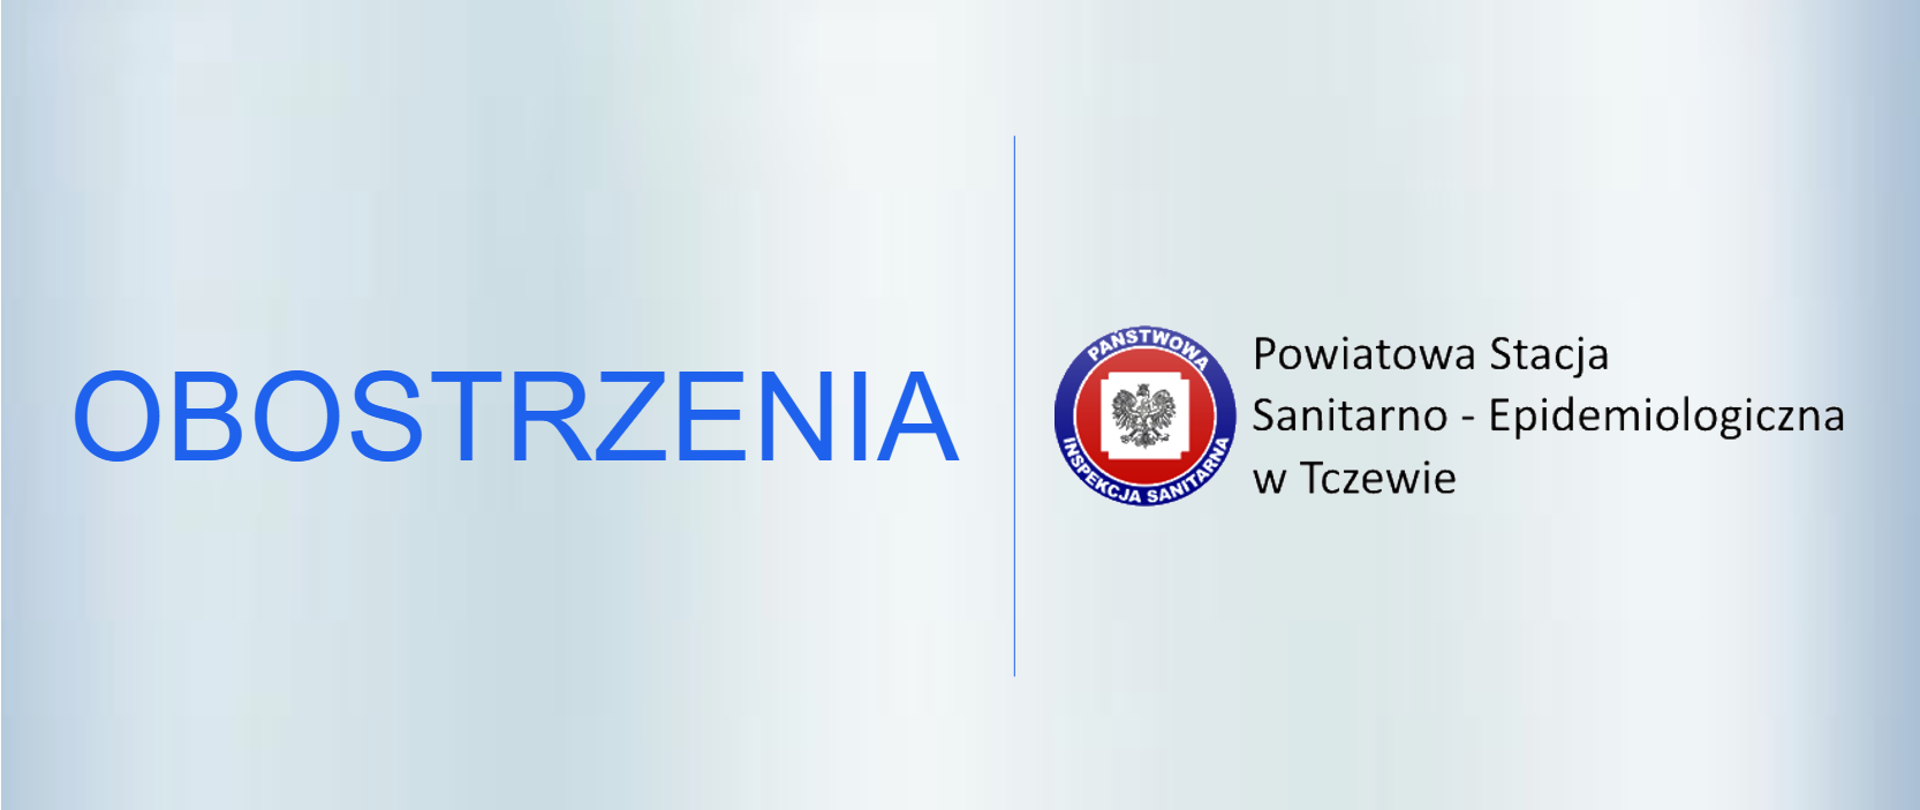 Napis Obobstrzenia, logo z orzełkiem Państwowej Inspekcji Sanitarnej , opis: Powiatowa Stacja Sanitarno-Epidemiologiczna w Tczewie